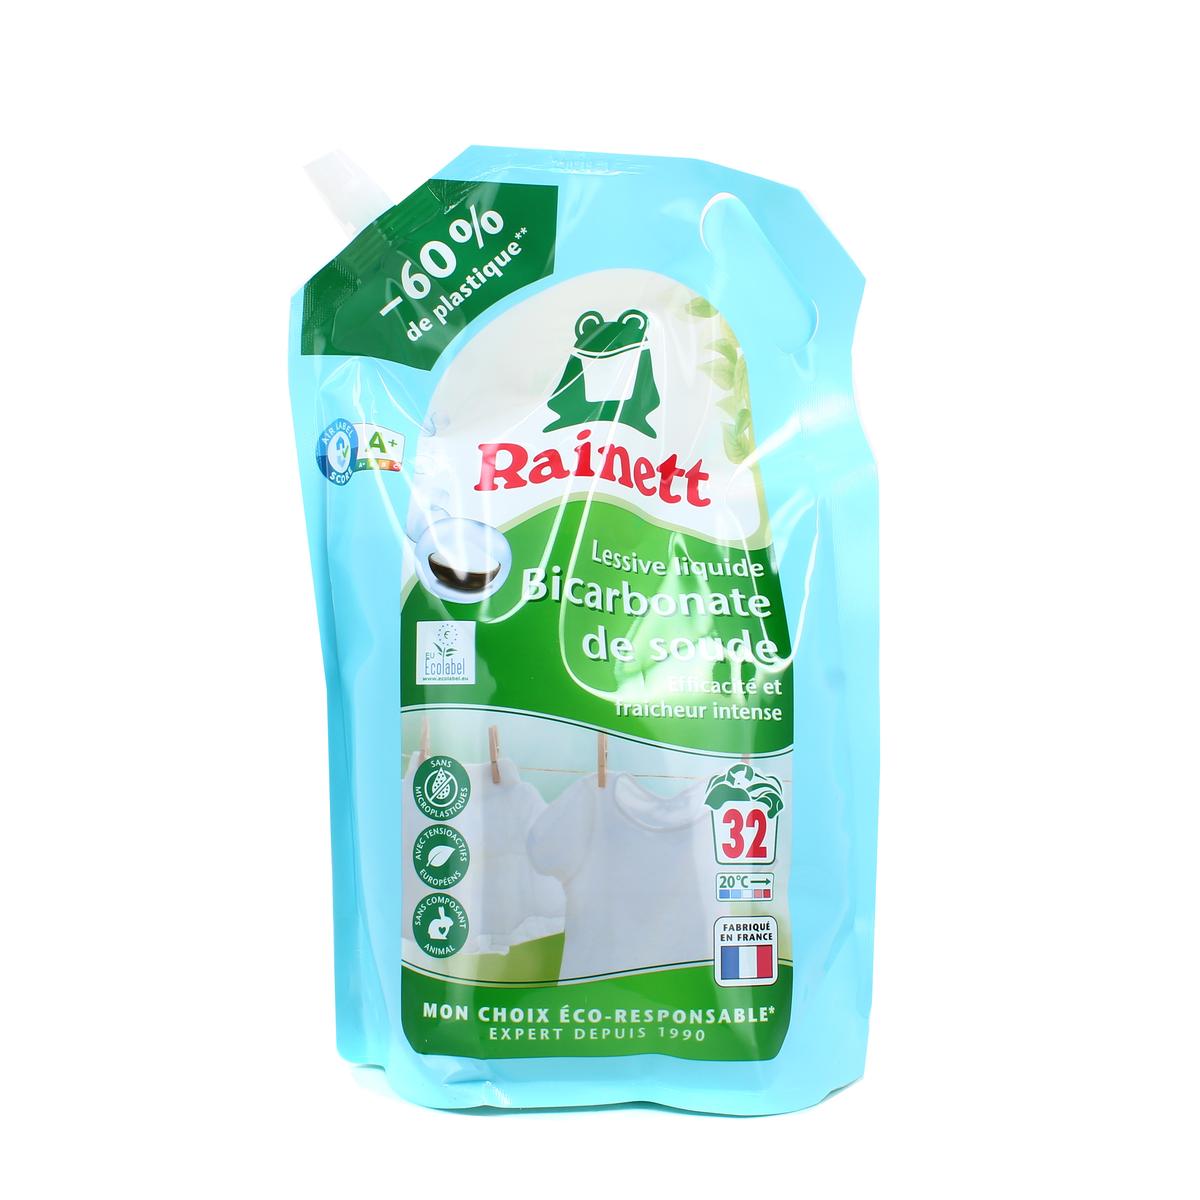 Lessive Rainett Pack de 5 - - Lessive Liquide Ecolabel Bicarbonate